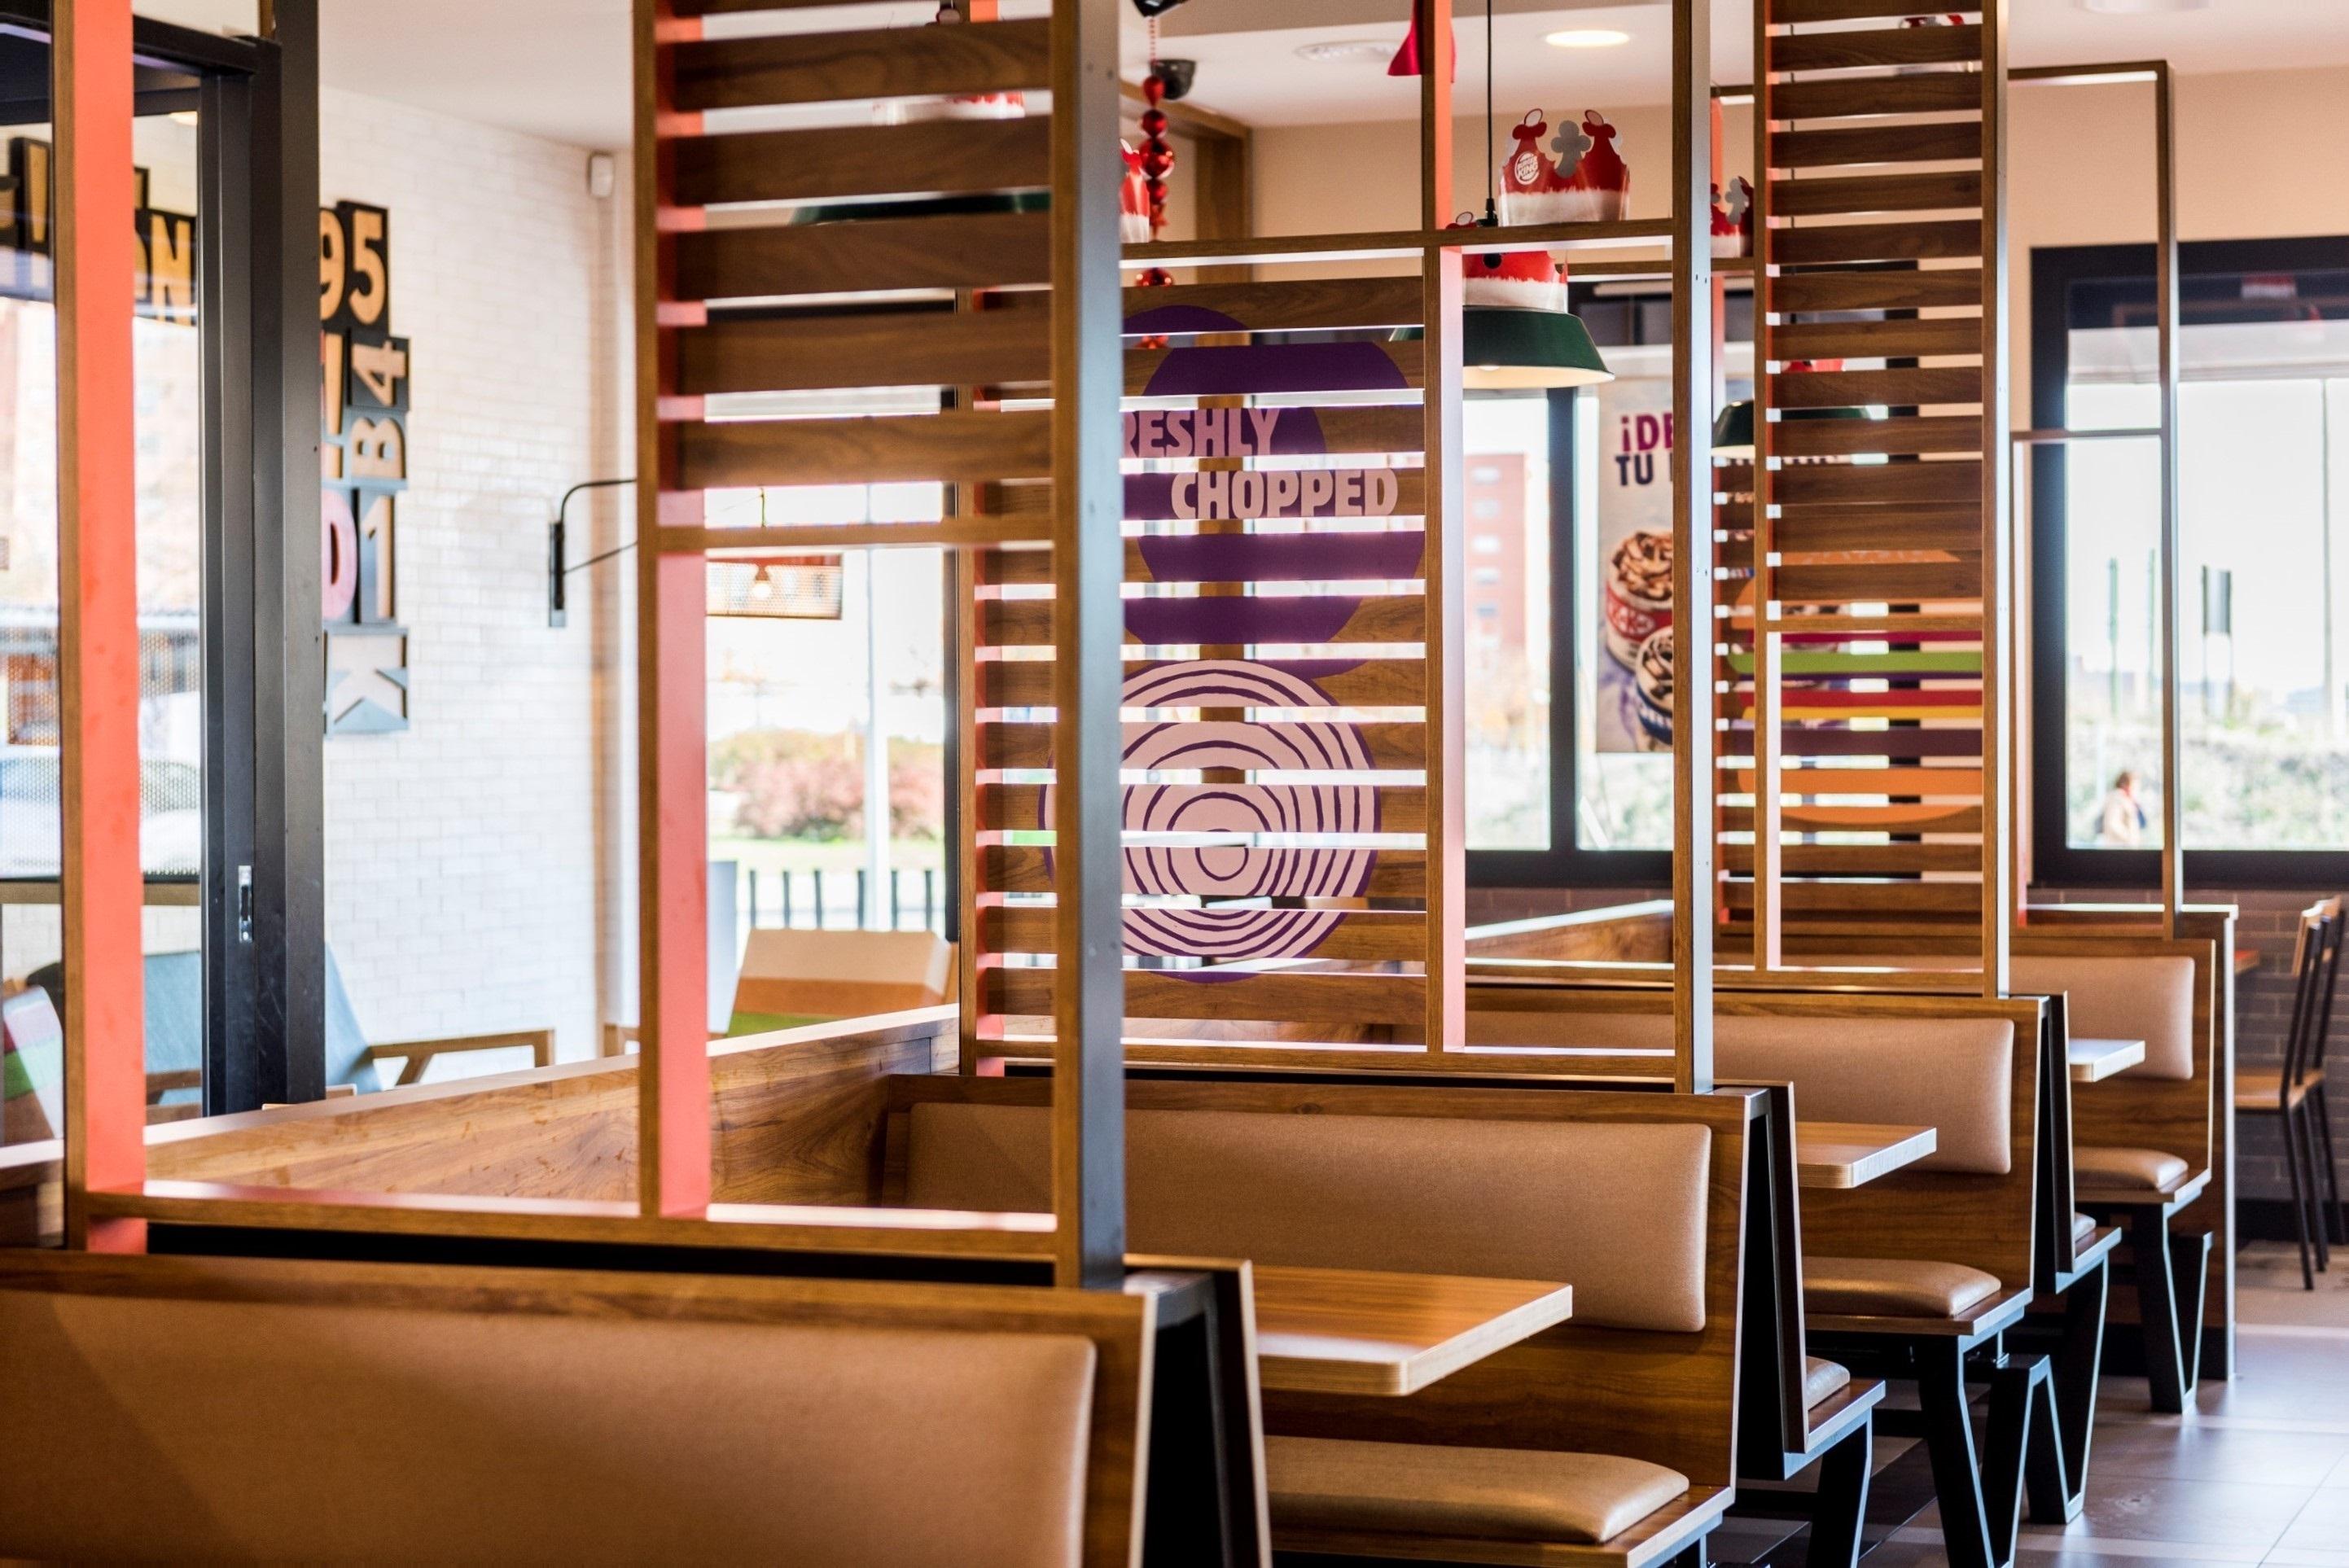 Imagen del nuevo restaurante de Burguer King inaugurado en Granada